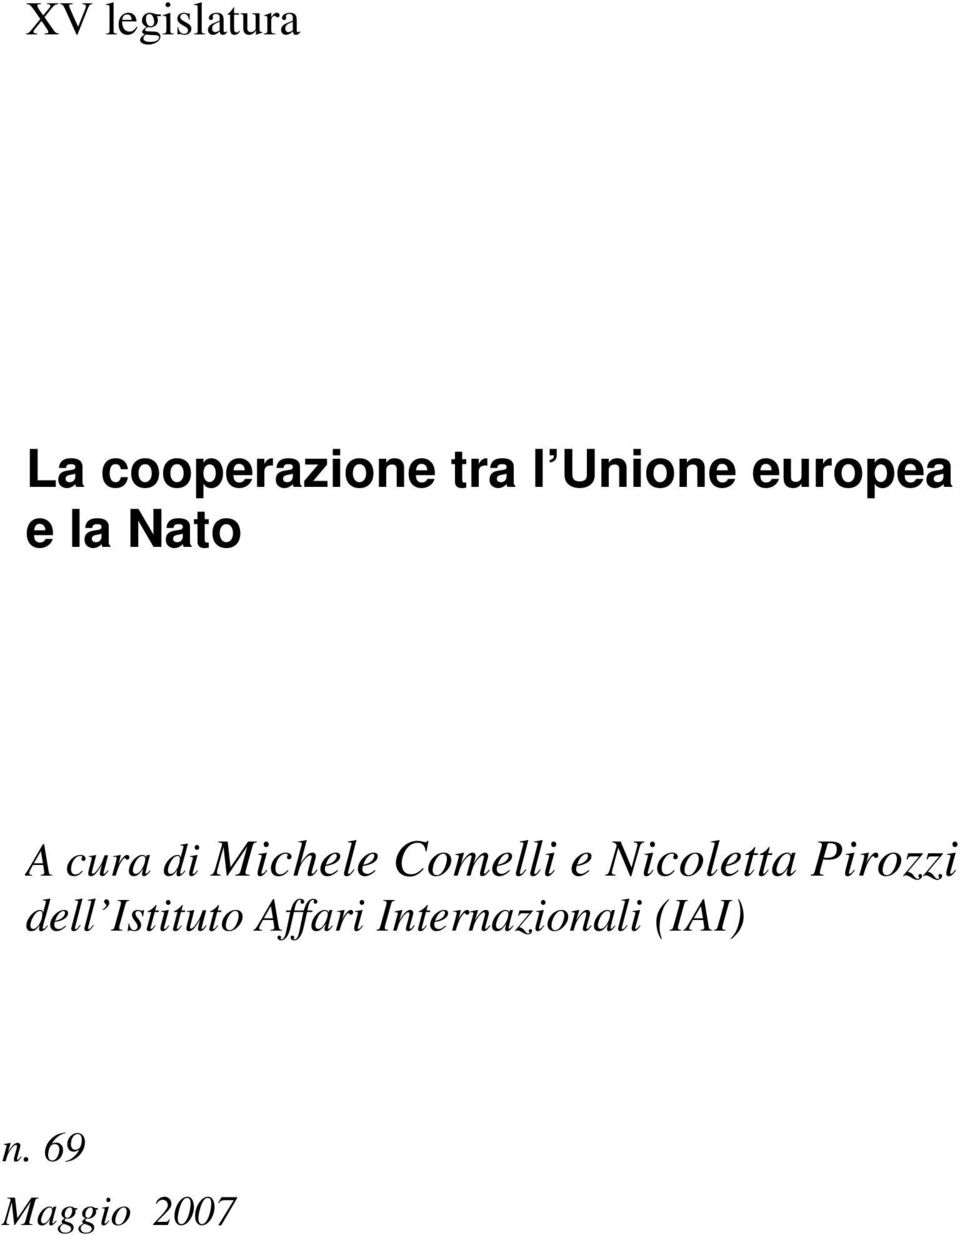 Michele Comelli e Nicoletta Pirozzi dell